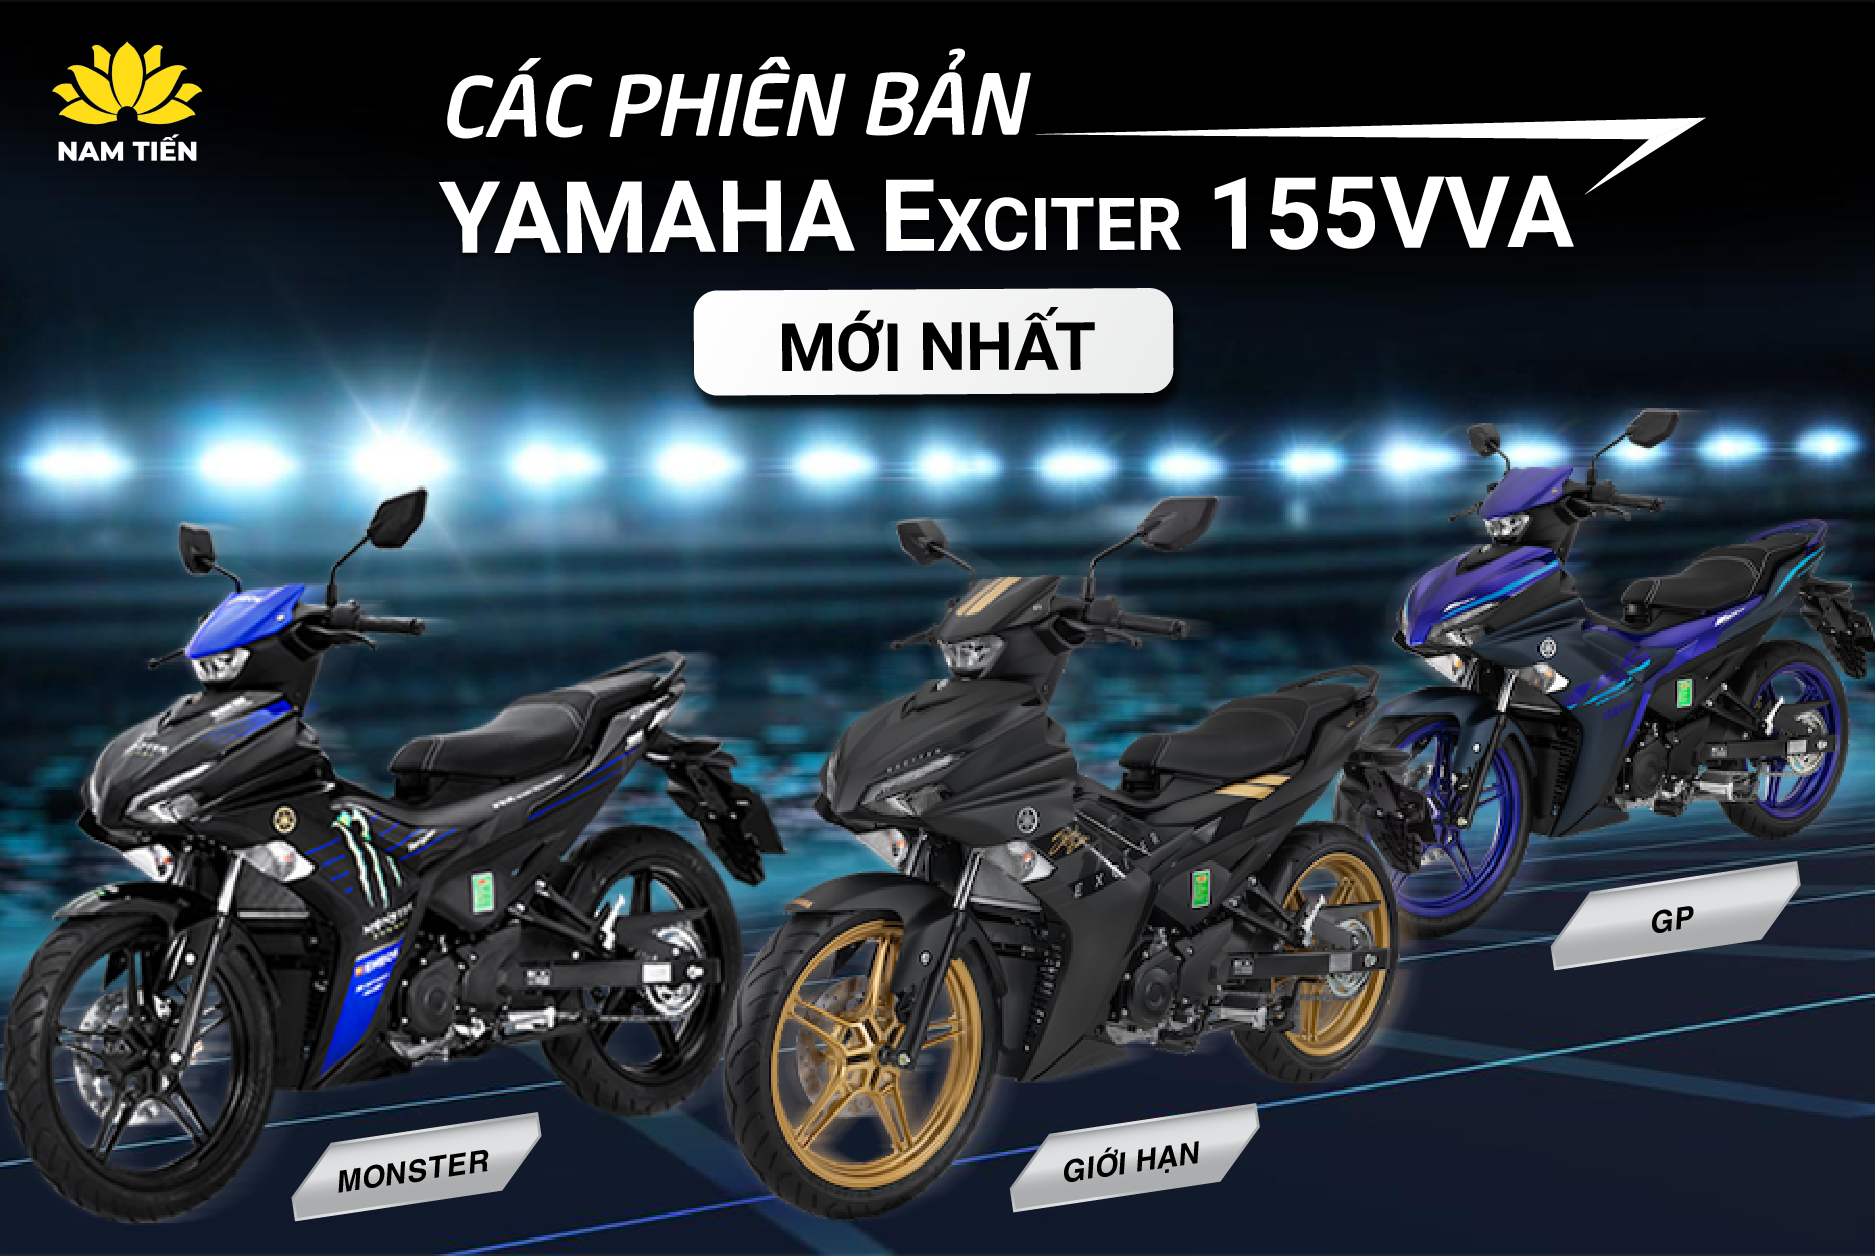 Đại lý bán xe máy Yamaha chính hãng